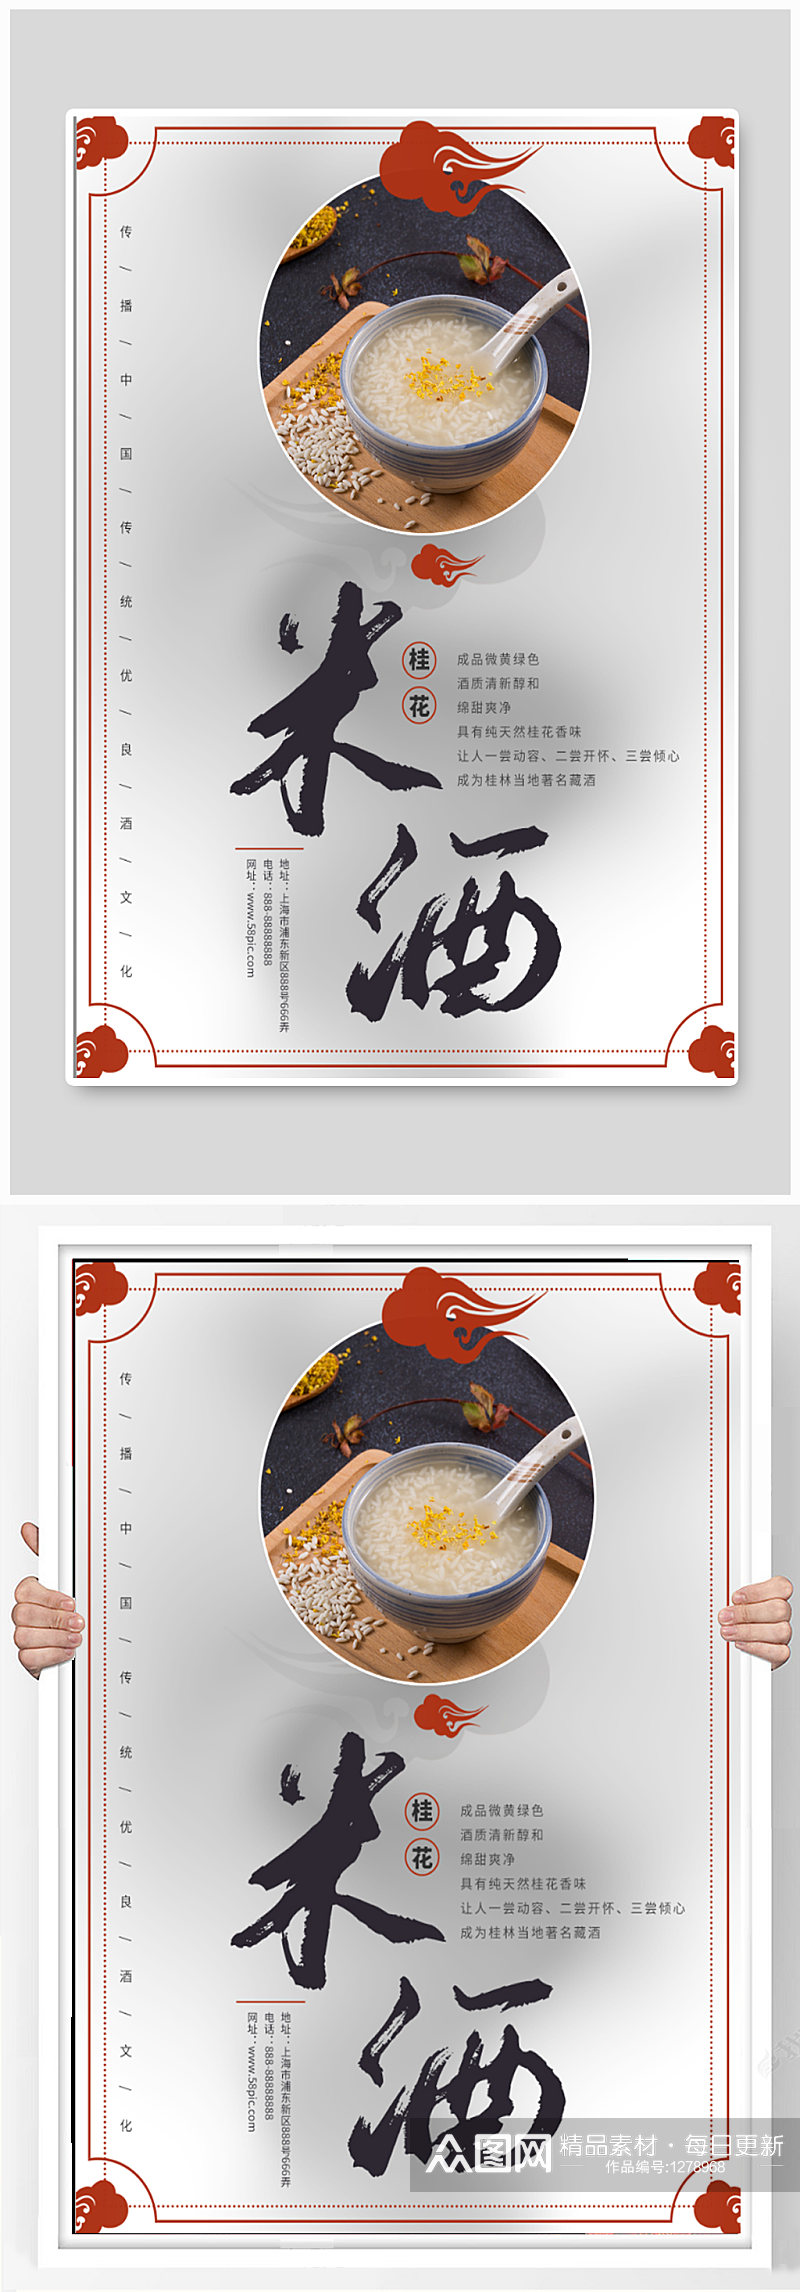 米酒酒文化宣传海报素材